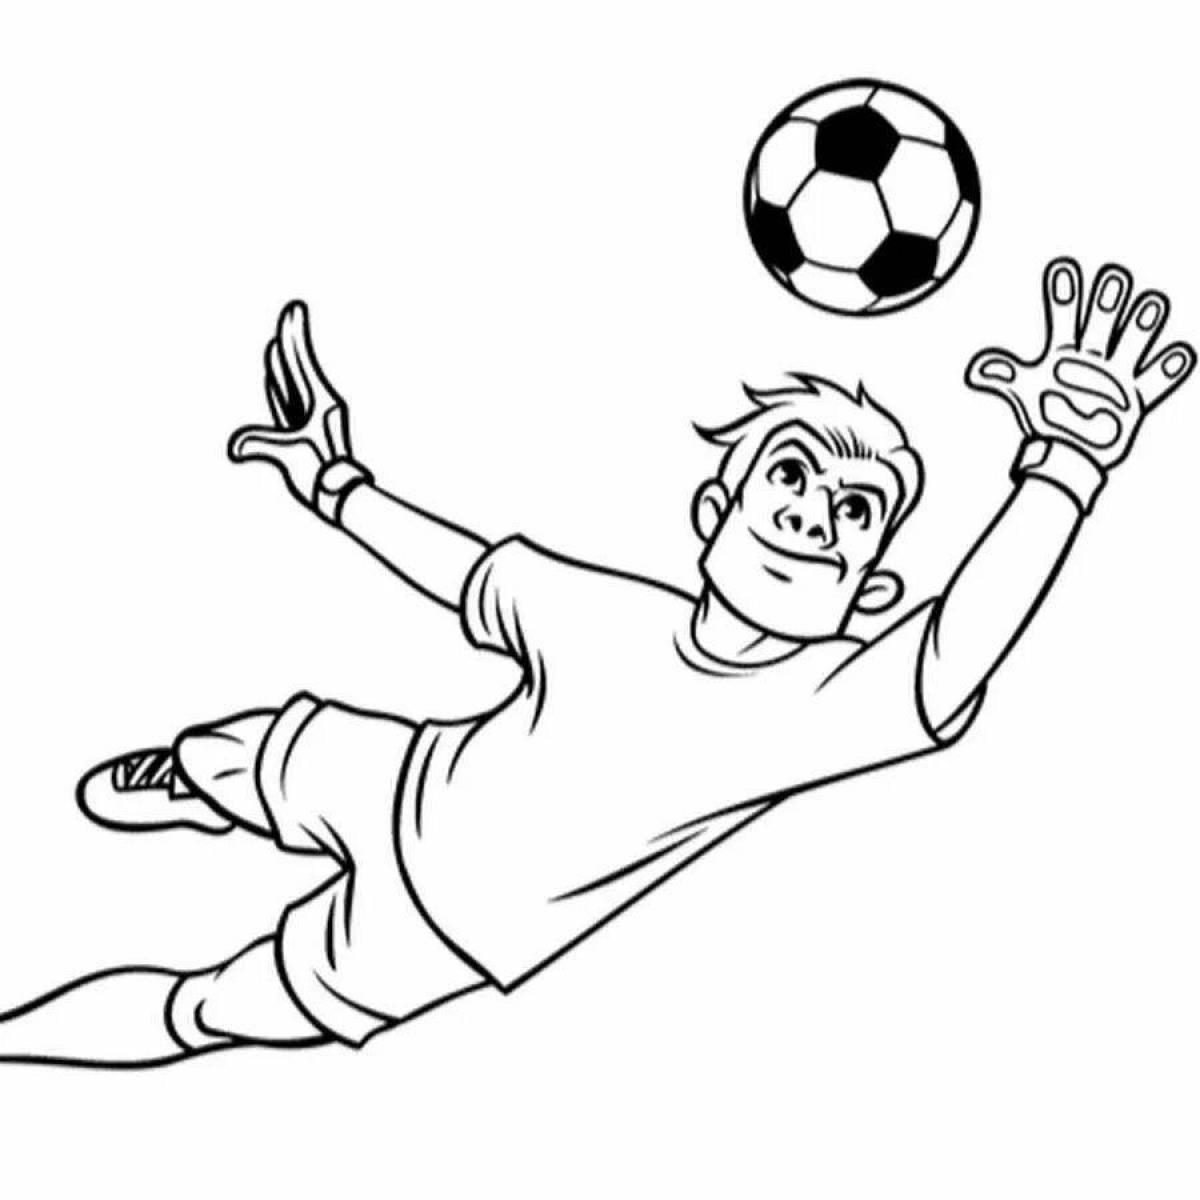 Детские рисунки про футбол легкие